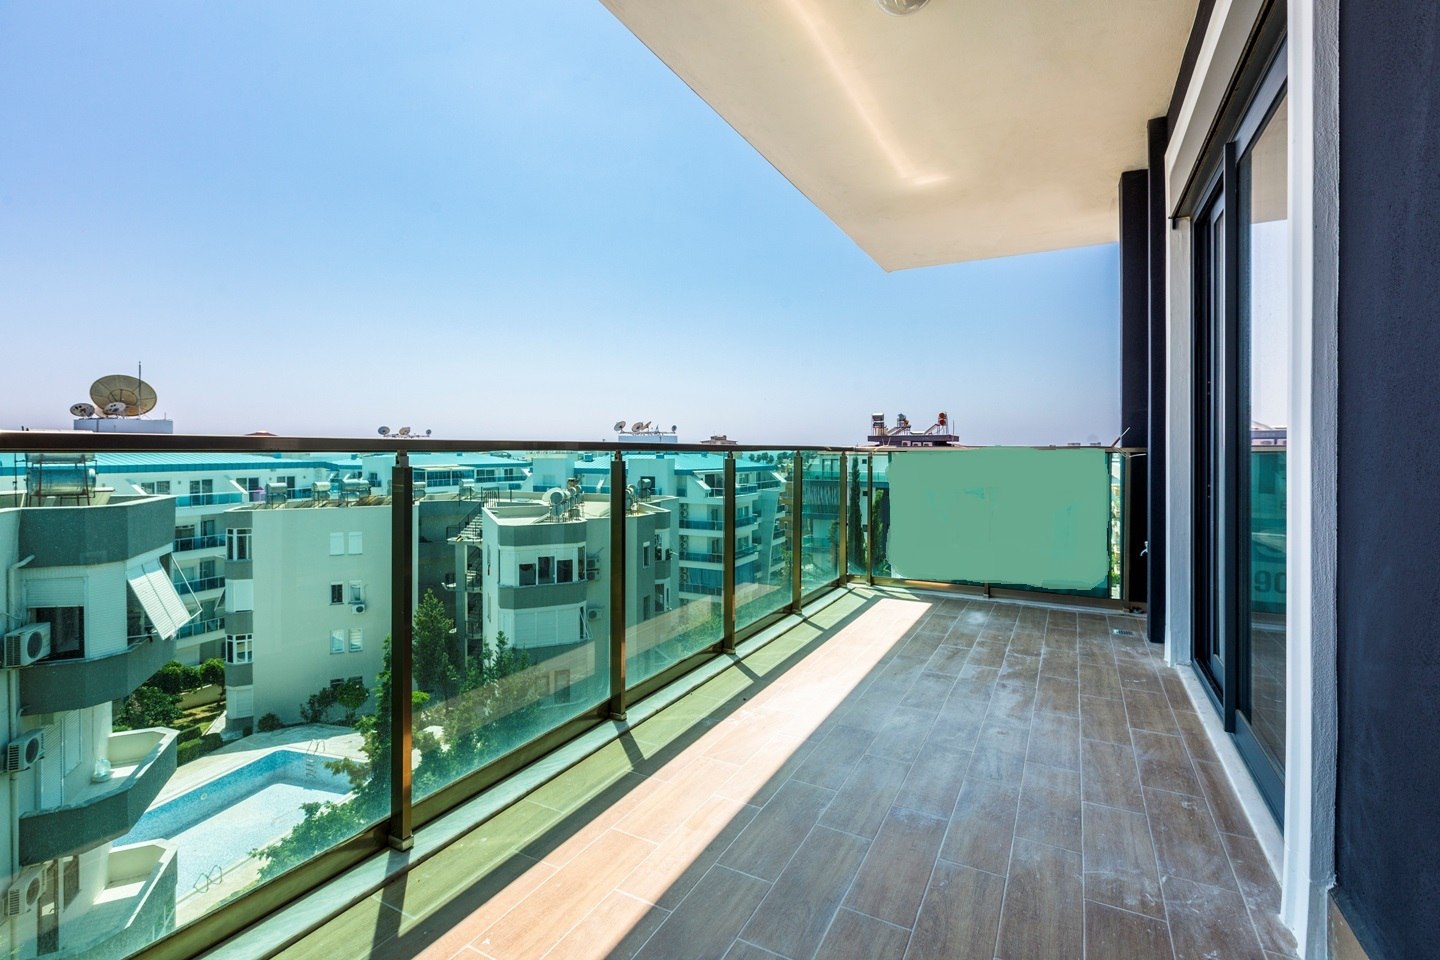 Квартира 2+1 для инвестиций в недвижимость Турции (109 кв.м.) в развитом районе